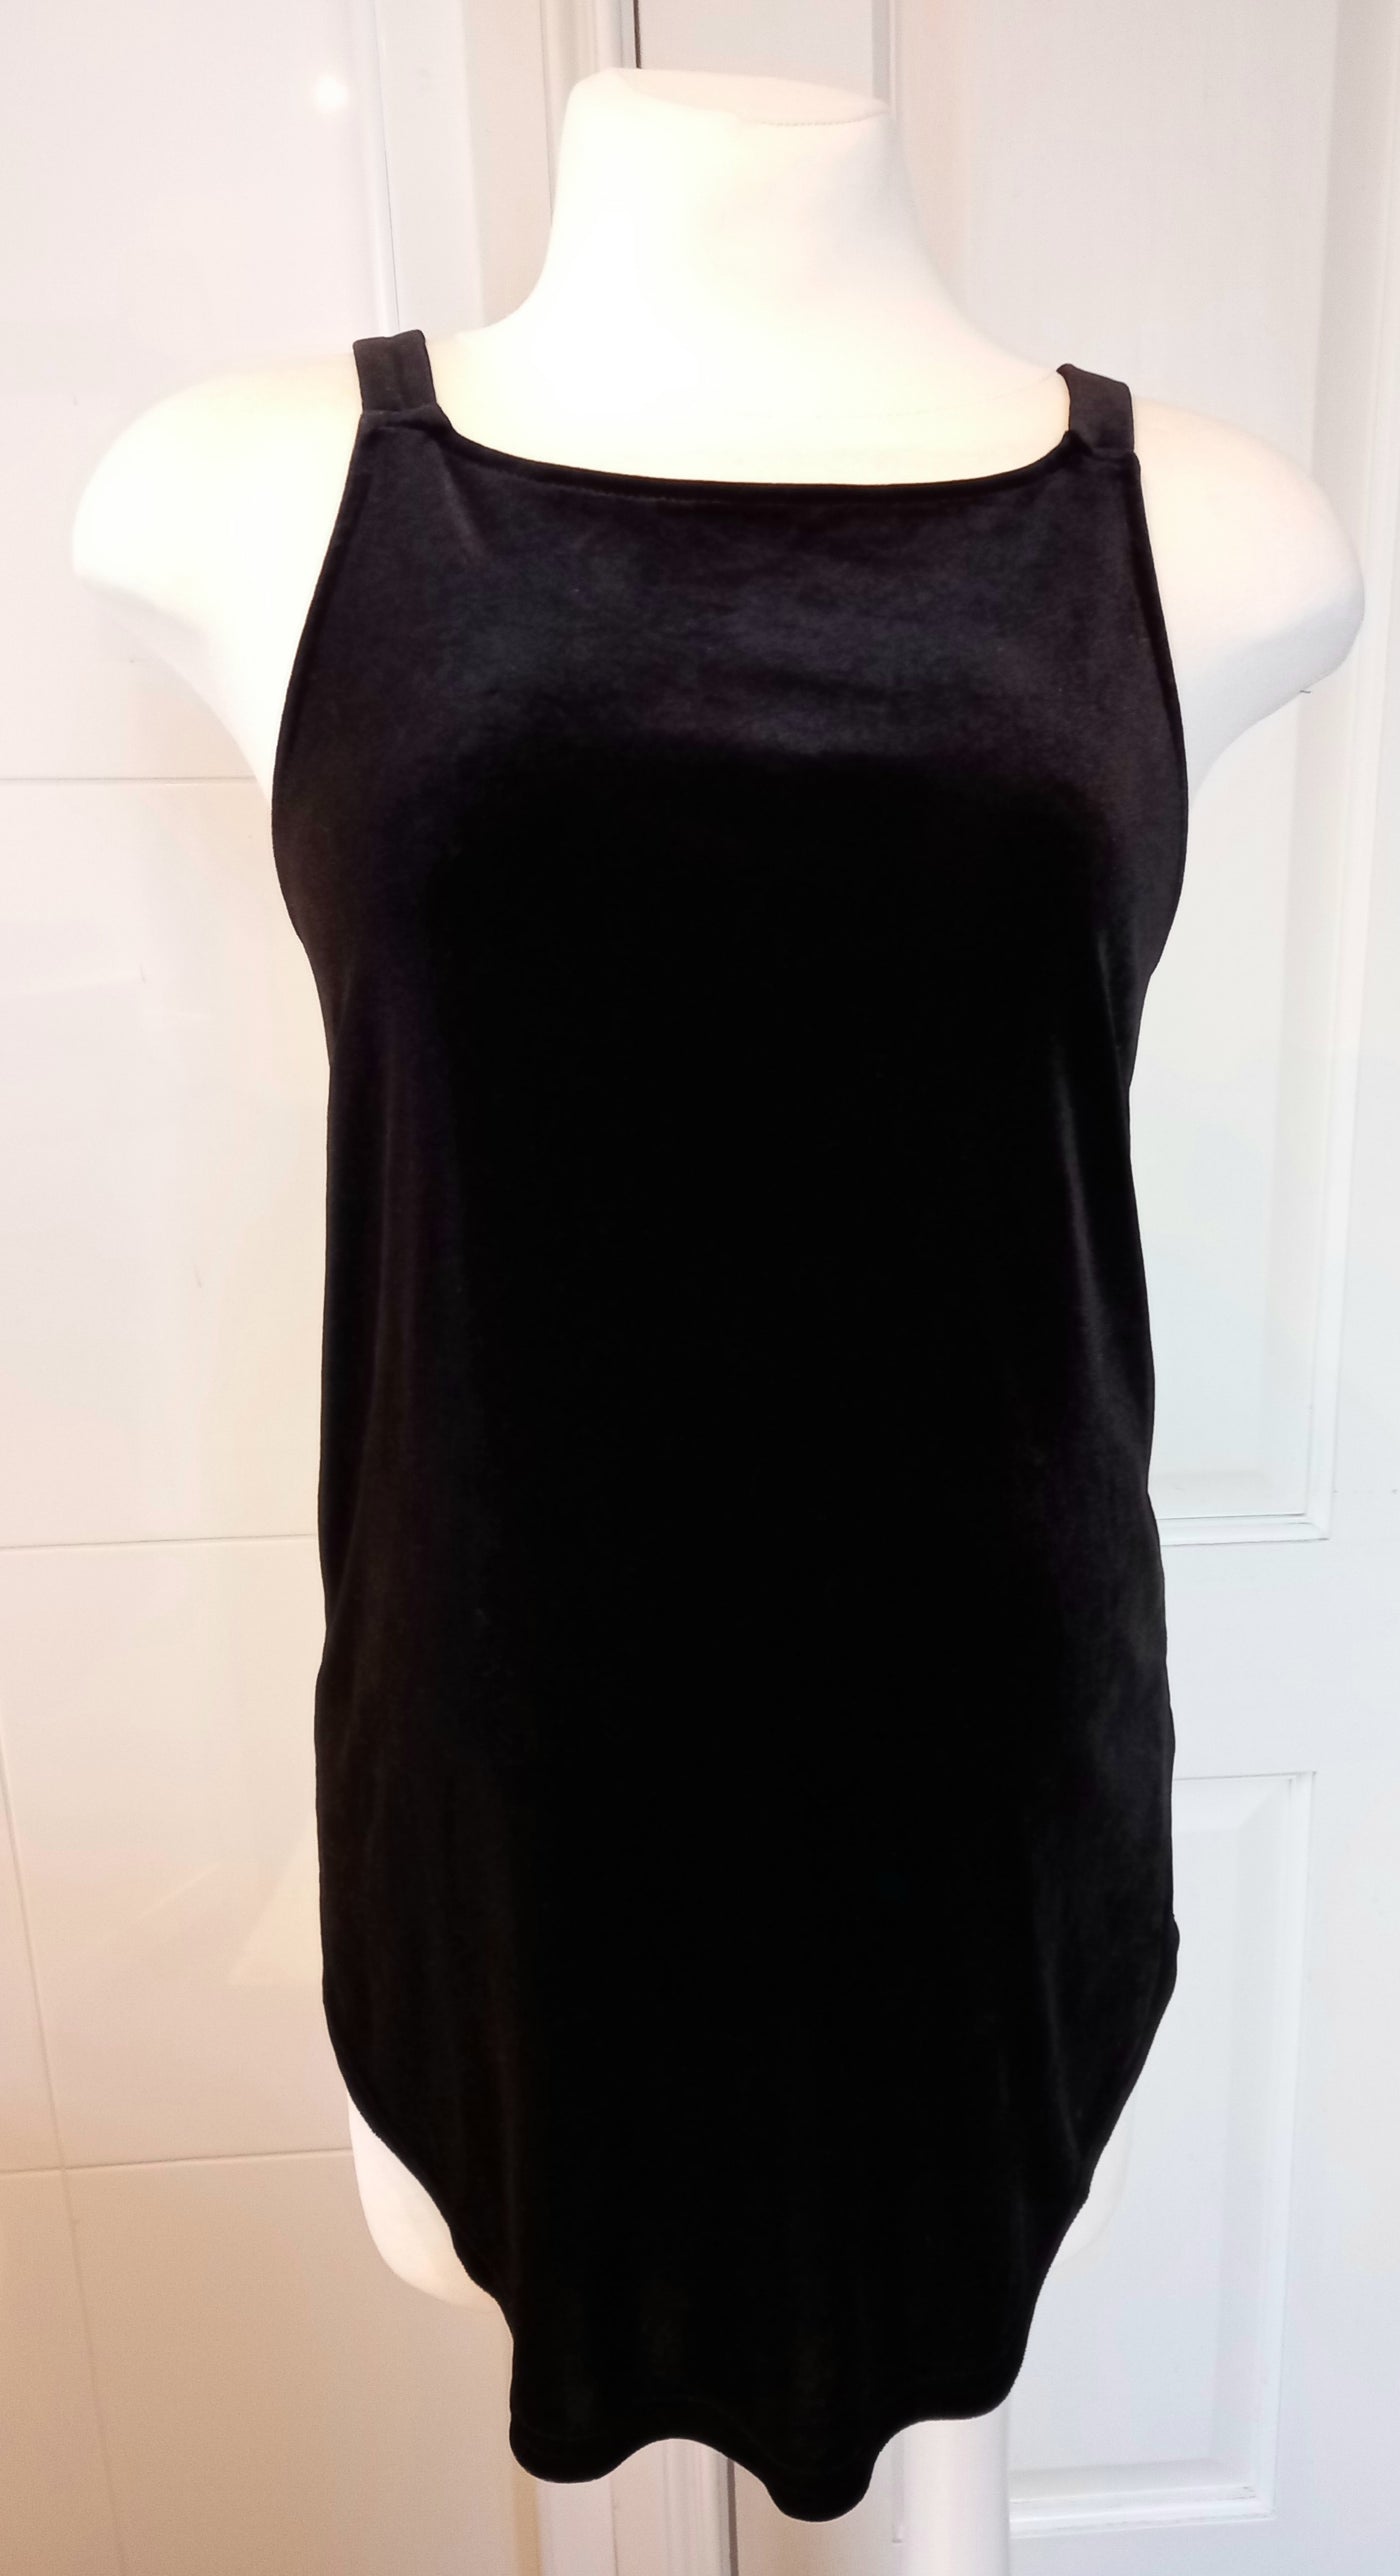 New Look Maternity Black Velvet Sleeveless Top - Size 8